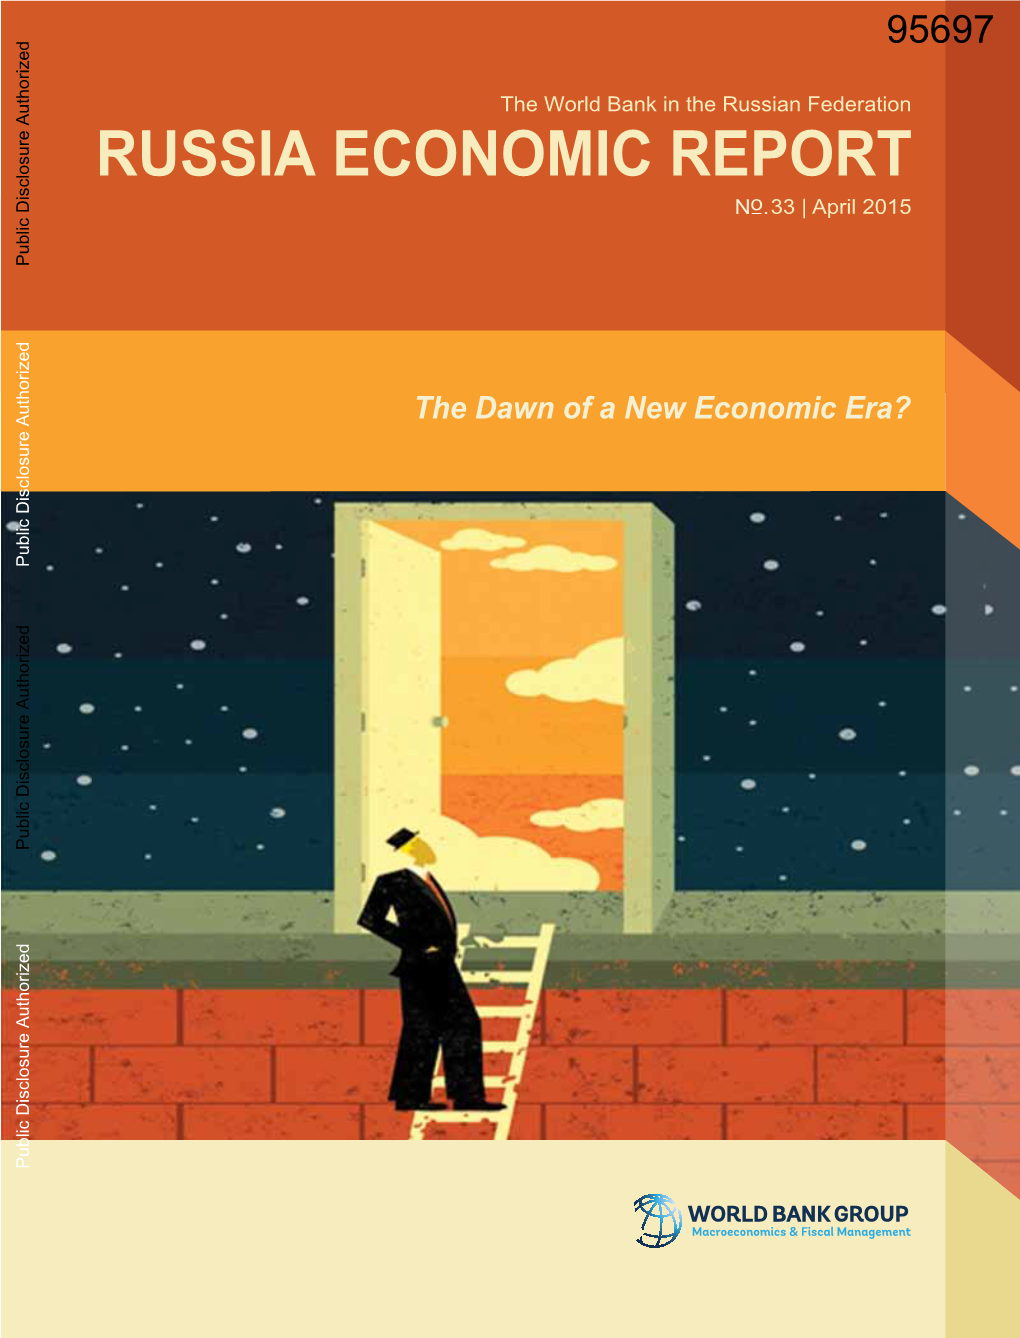 Russia Economic Report the Dawn of a New Economic Era?